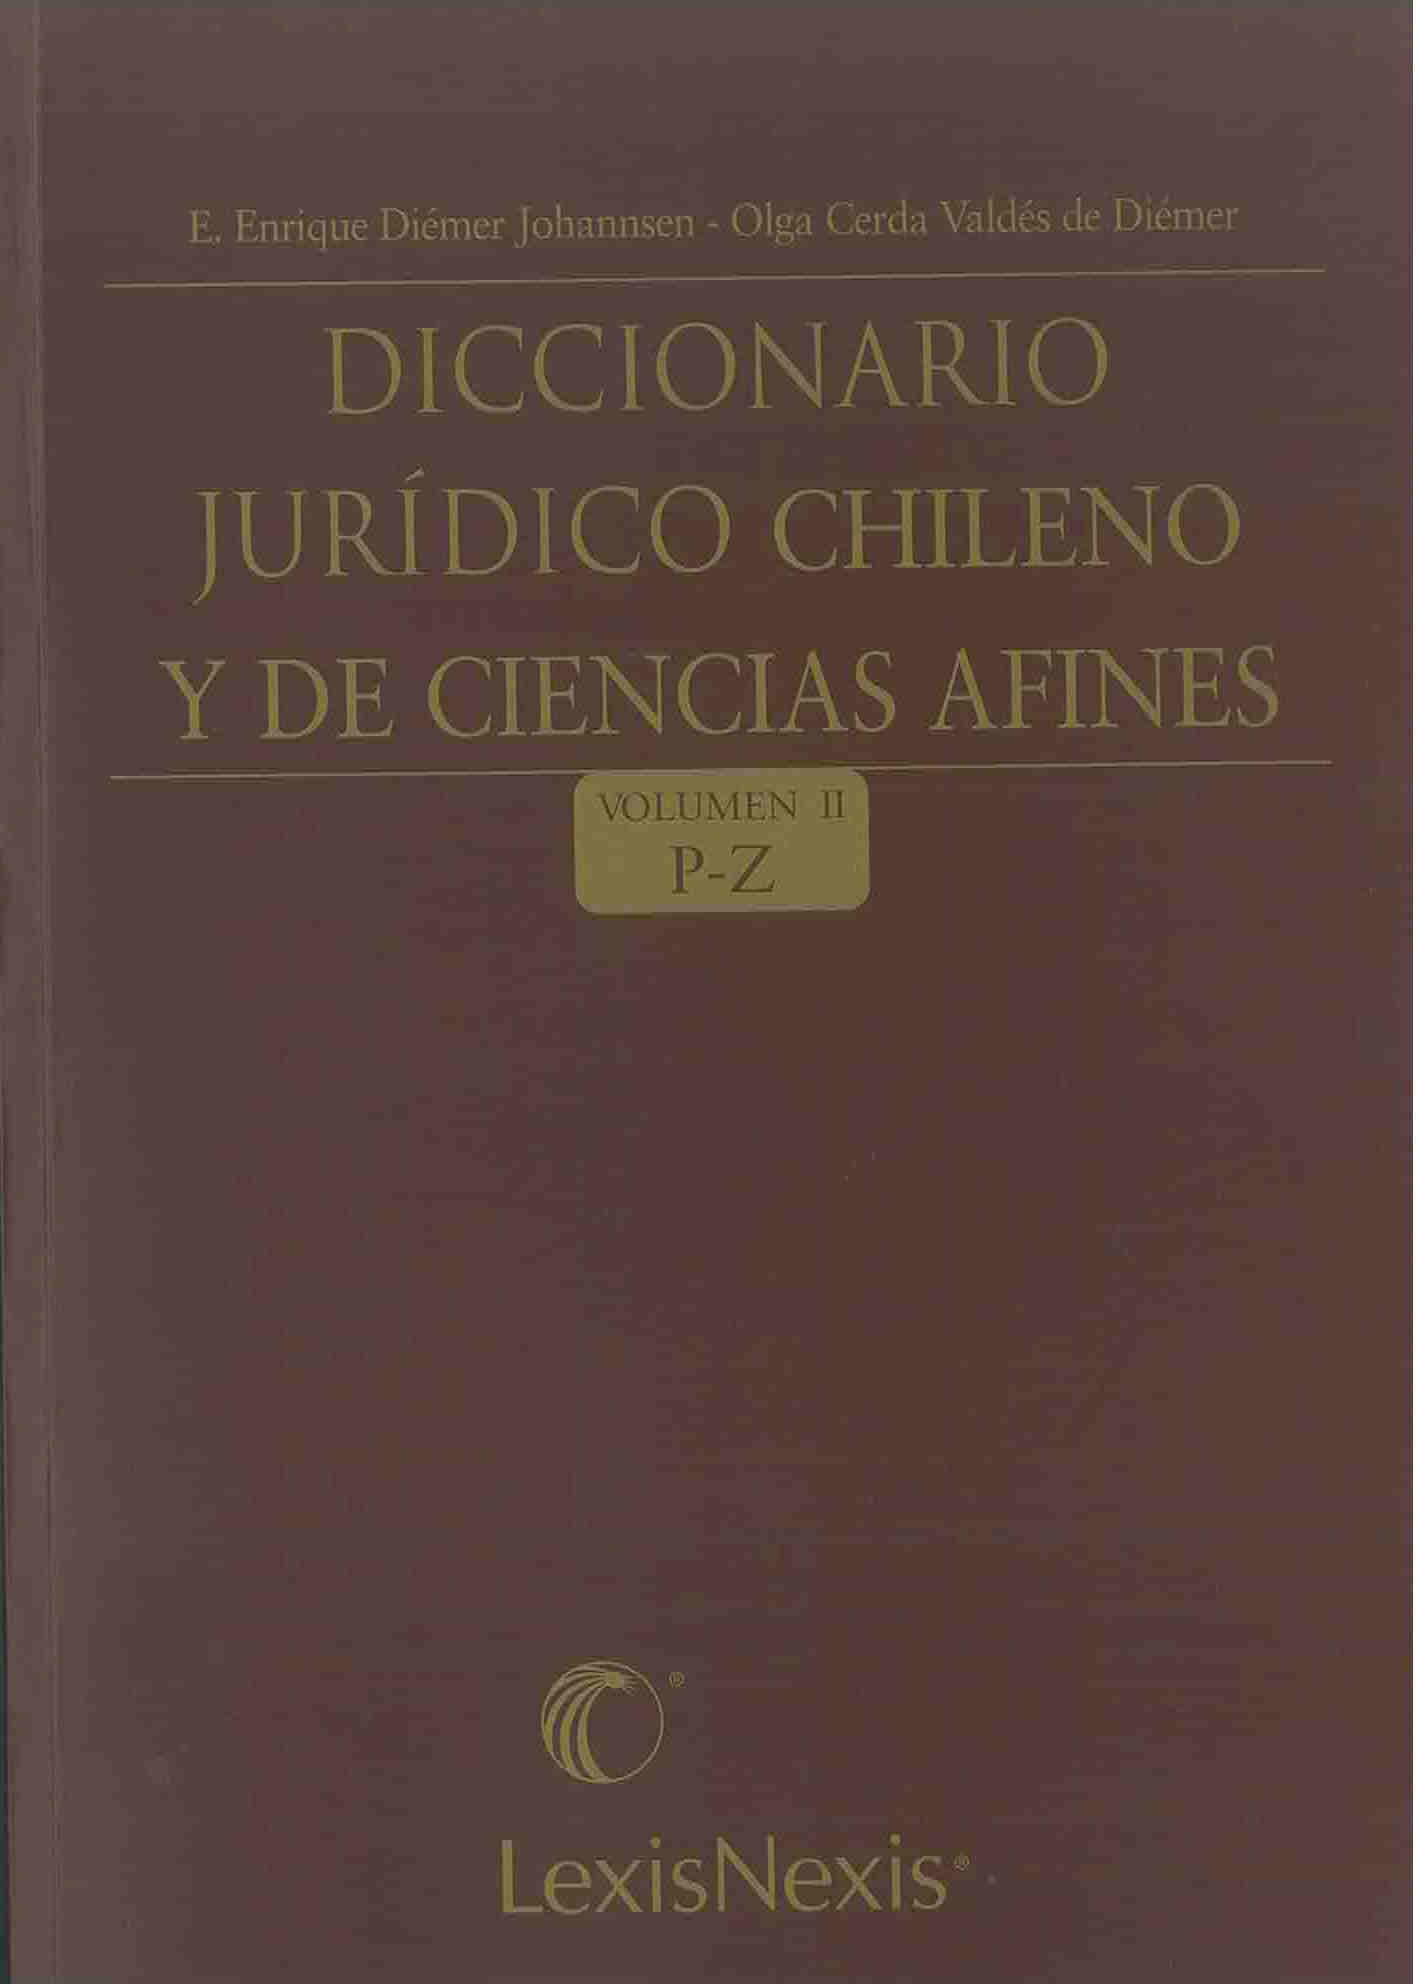 Diccionario jurídico chileno y de ciencias afines